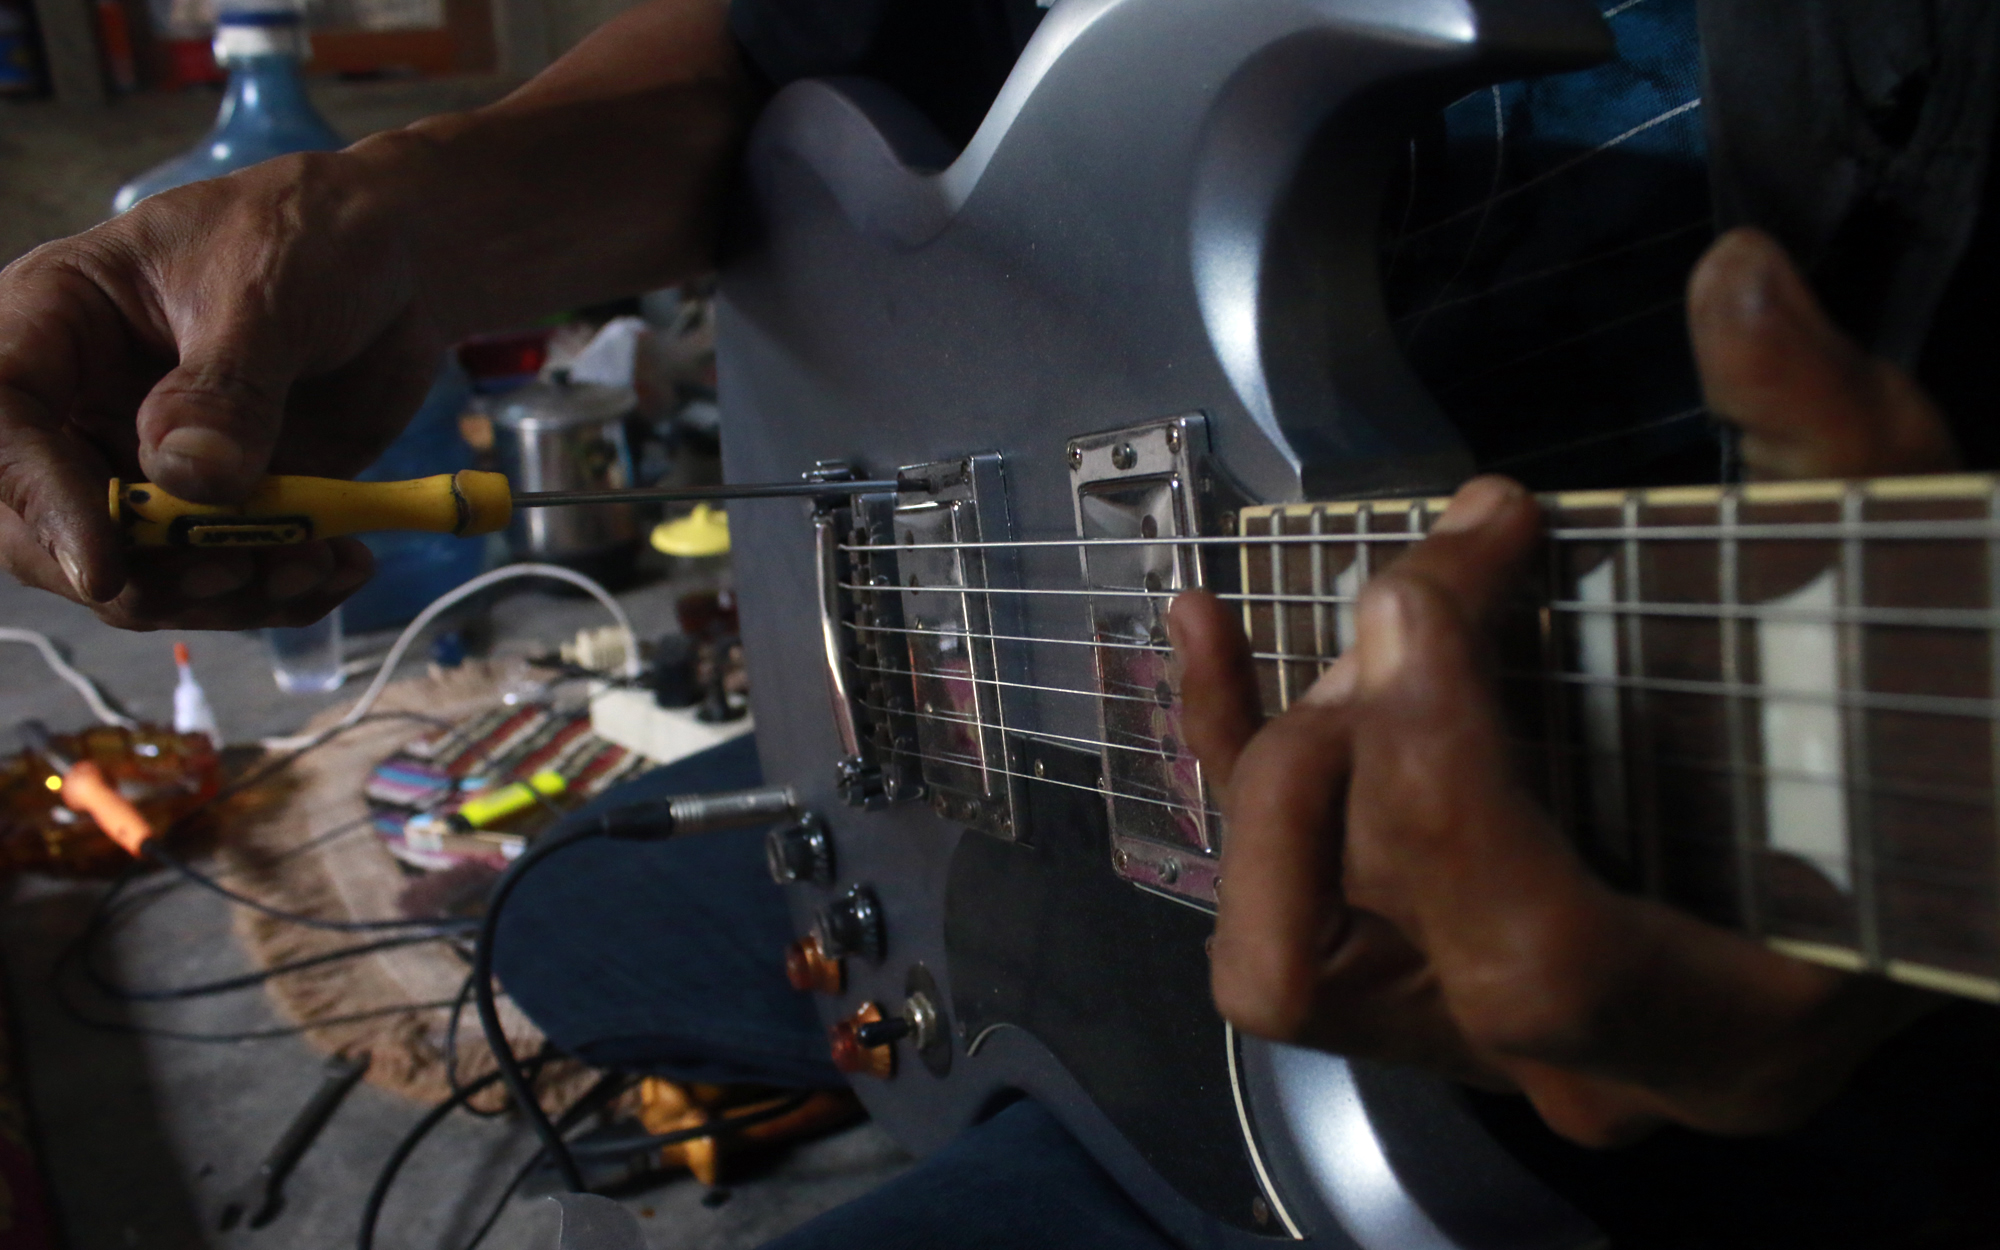 Proses penyetelan suara pada senar gitar agar suara petikan yang dihasilkan bersih. (Lampungnews/El Shinta)